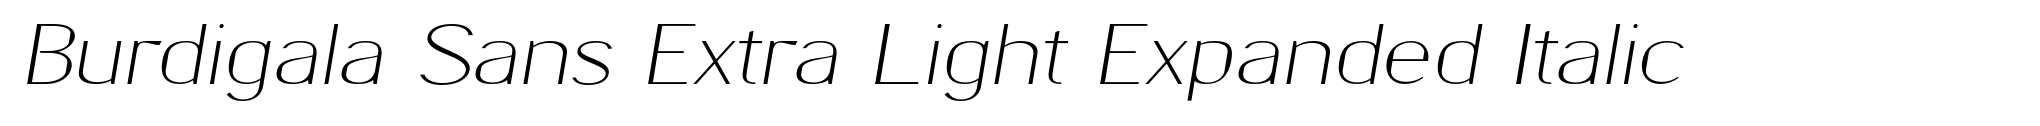 Burdigala Sans Extra Light Expanded Italic image